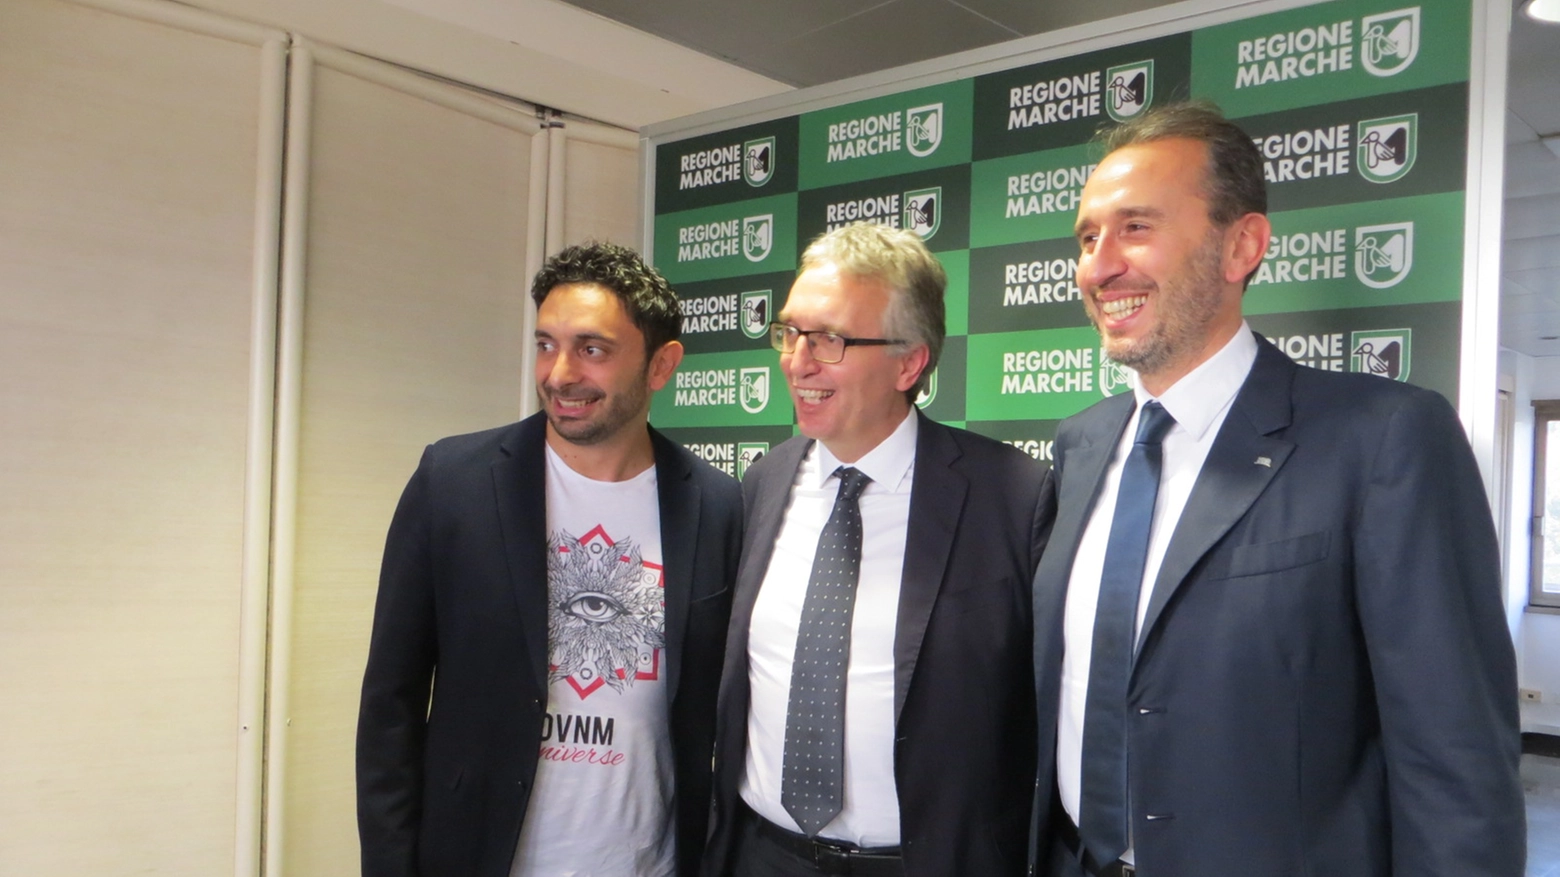 Da sinistra Davide Mazzanti, Luca Ceriscioli e Fabrizio Pasquali